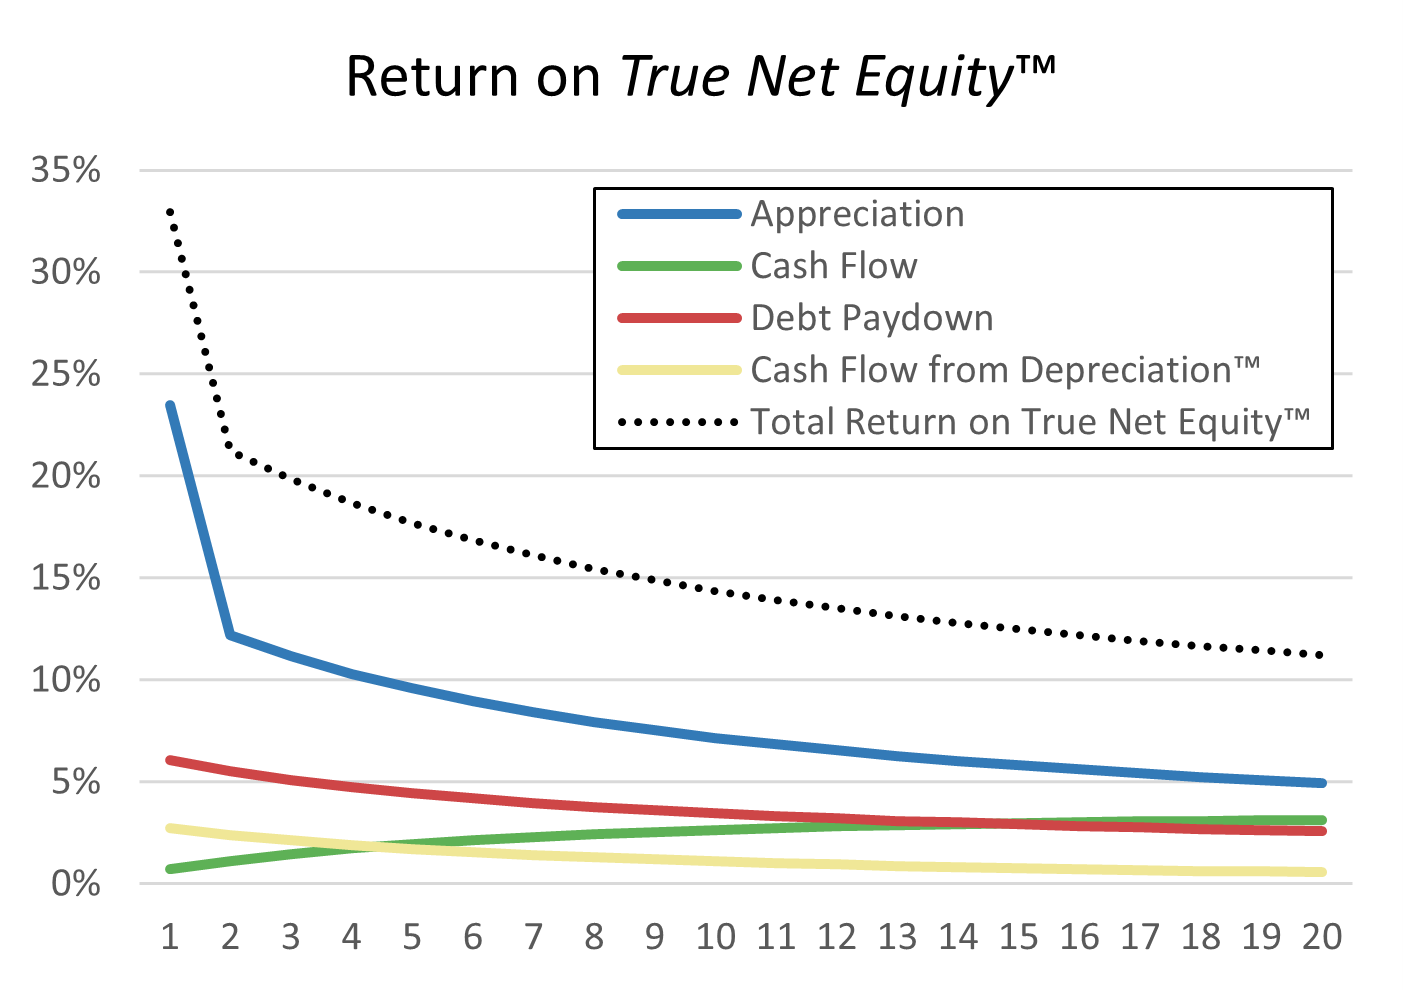 6 - Return on True Net Equity - Years 1-20